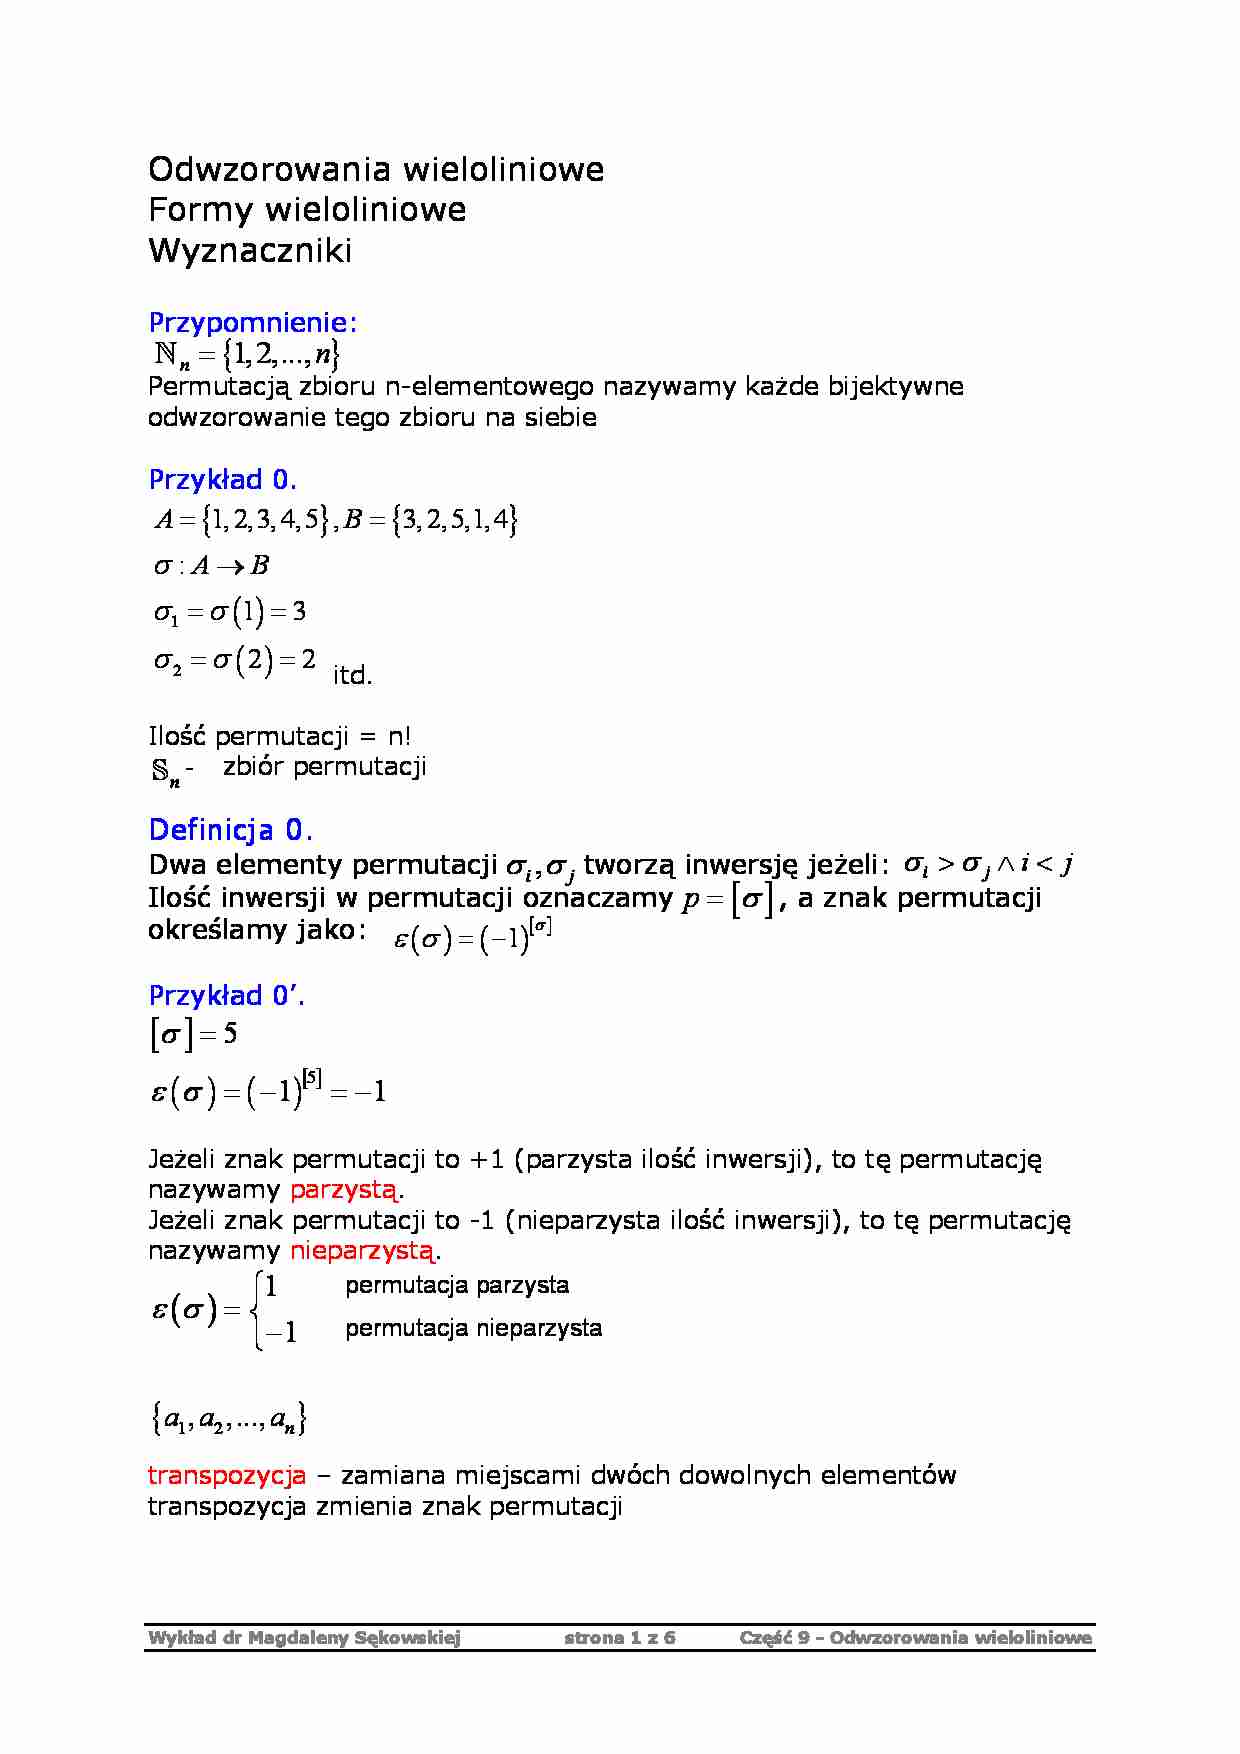 Odwzorowania wieloliniowe - algebra - strona 1